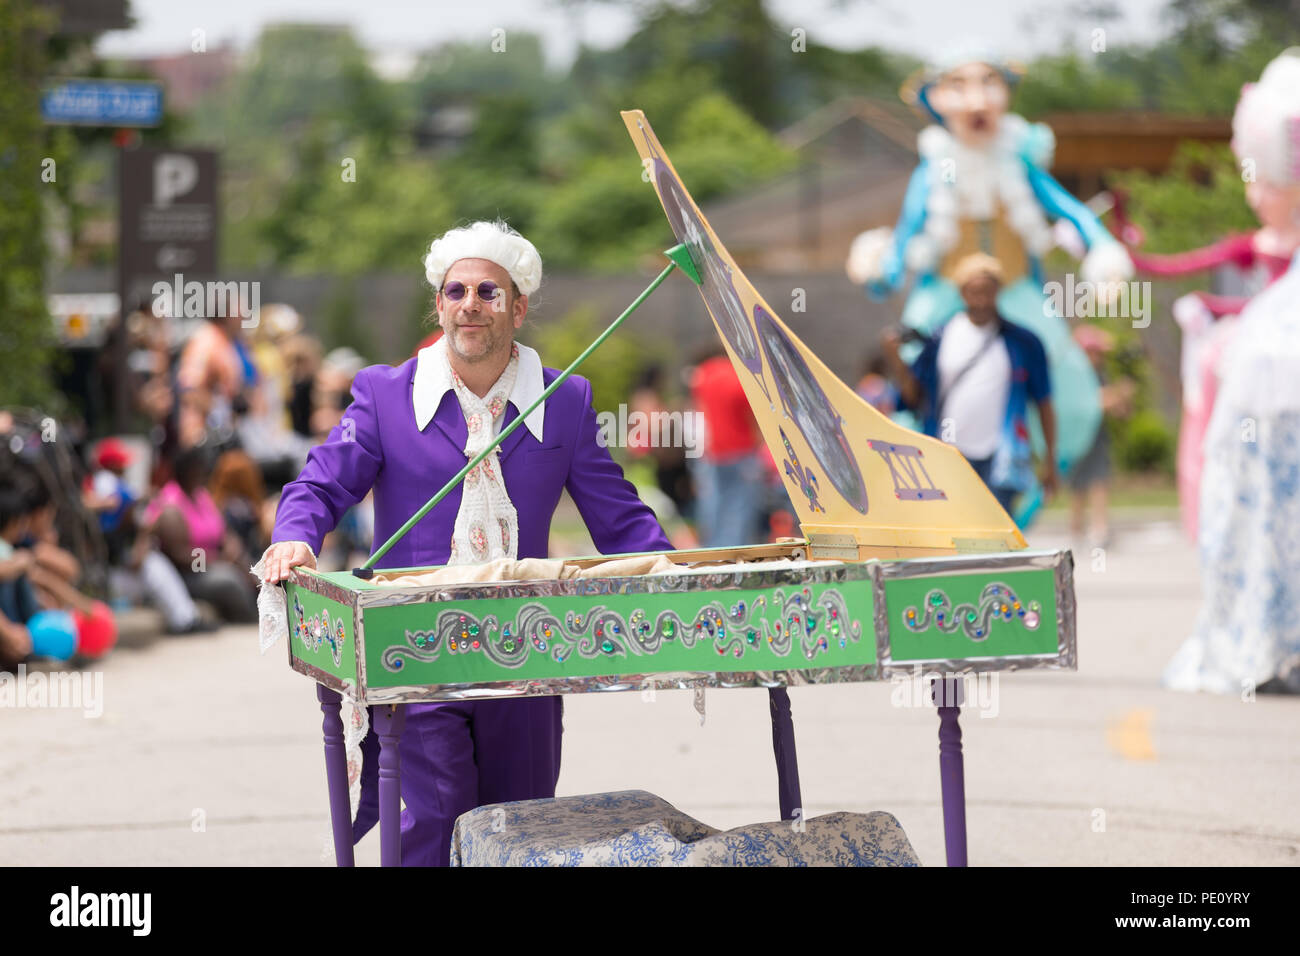 Cleveland, Ohio, USA - 9 juin 2018 l'homme fait semblant de jouer du piano portant une perruque blanche et violet lunettes au défilé du festival d'art abstrait le Circ Banque D'Images